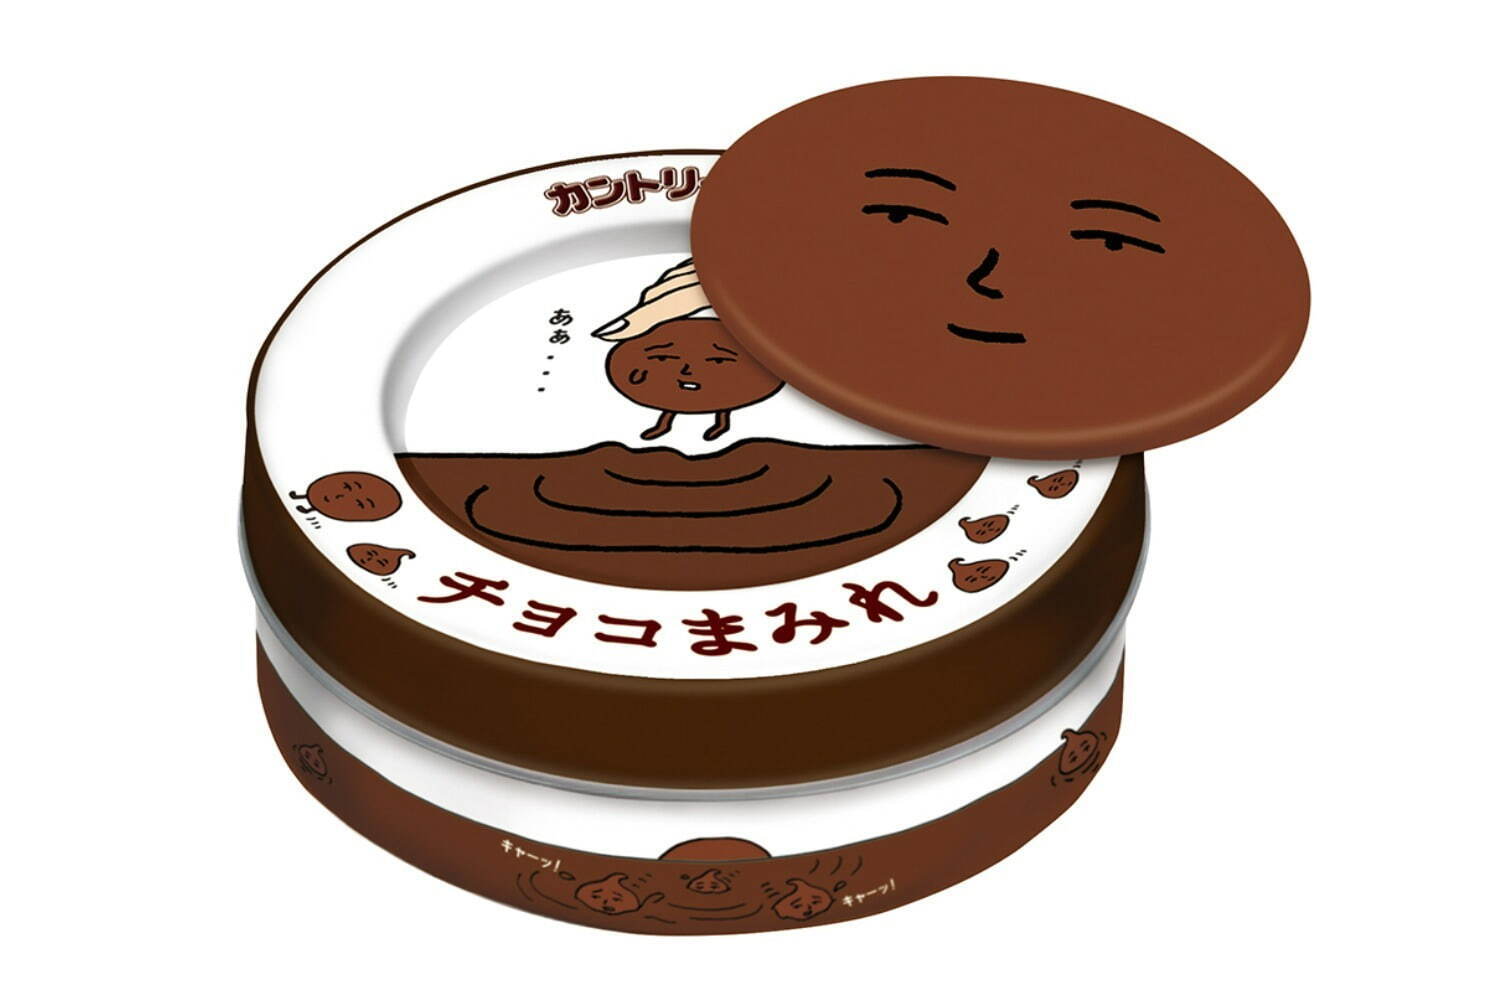 「カントリーマアムチョコまみれ缶(マグネット付き)」550円